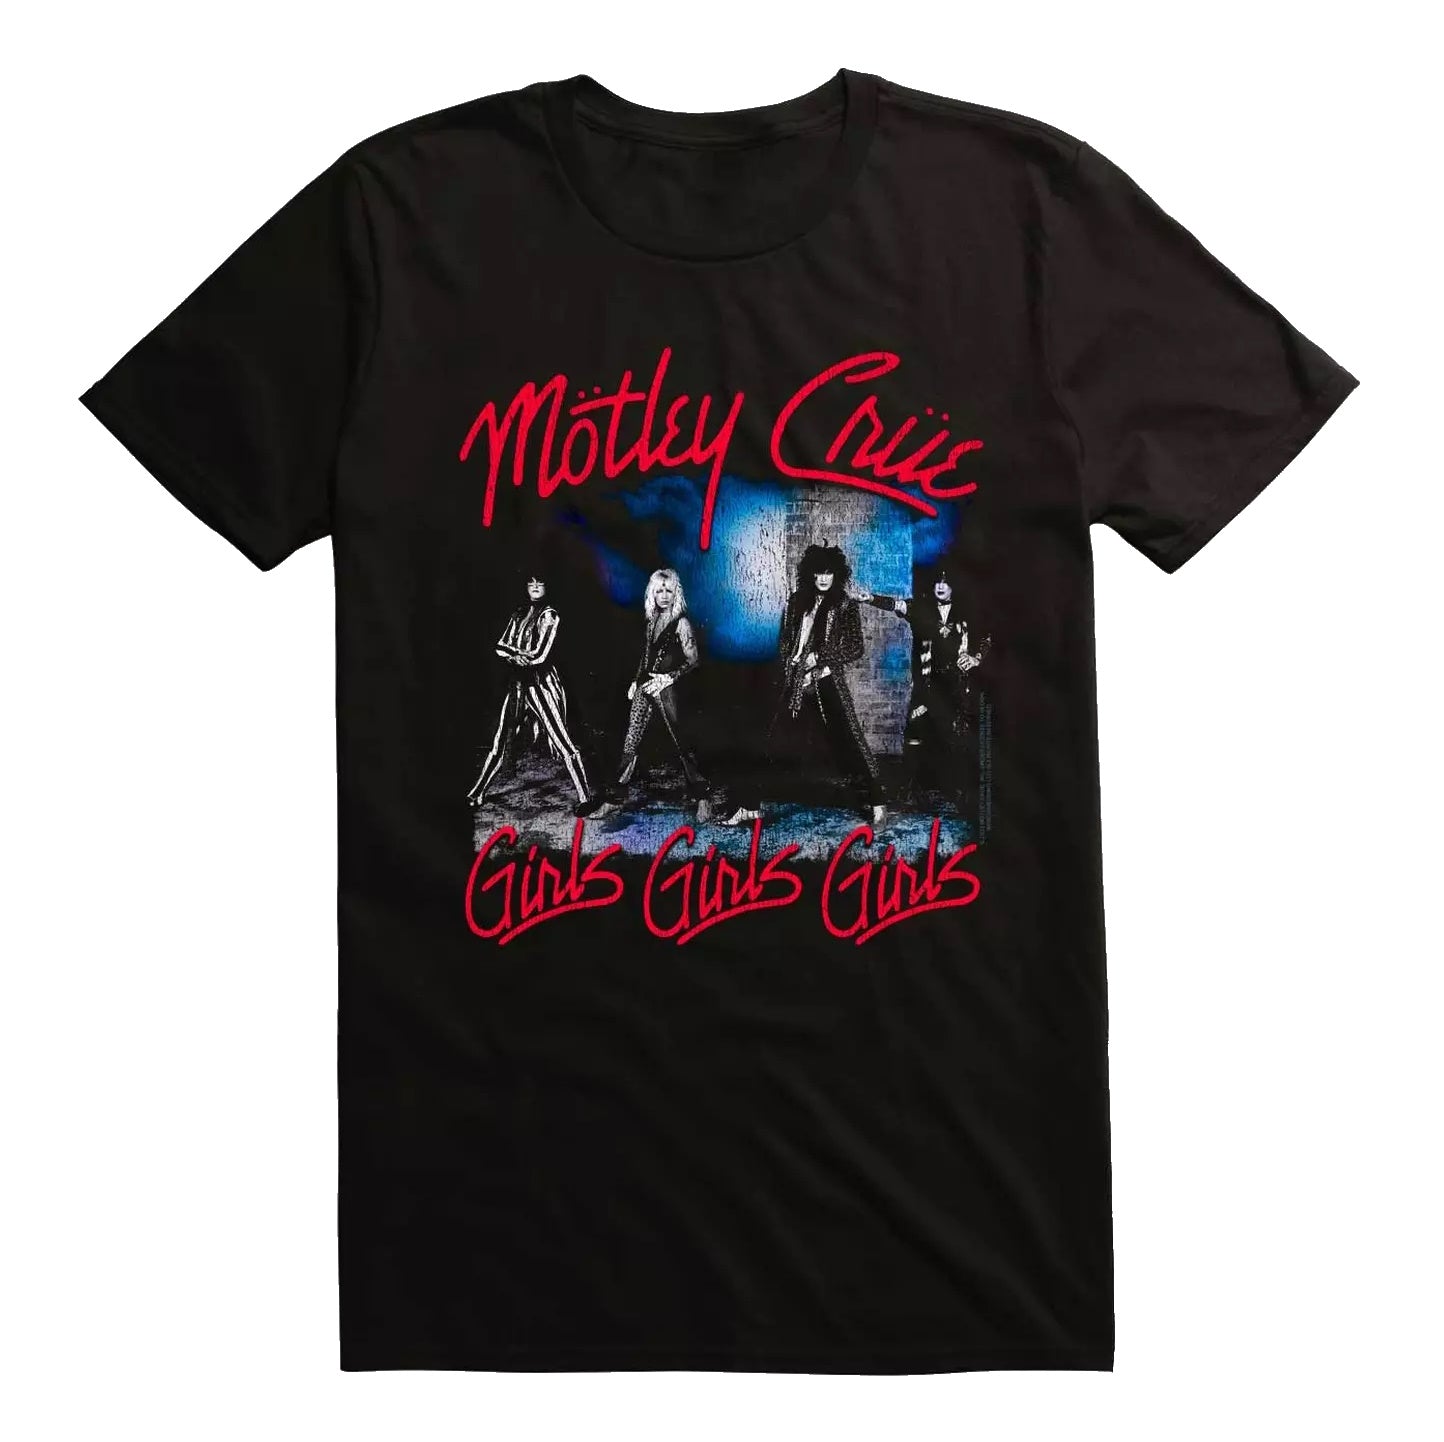 Motley Crue Girls Girls Girls / Dr. Feelgood Mens T-shirt Officially Licensed